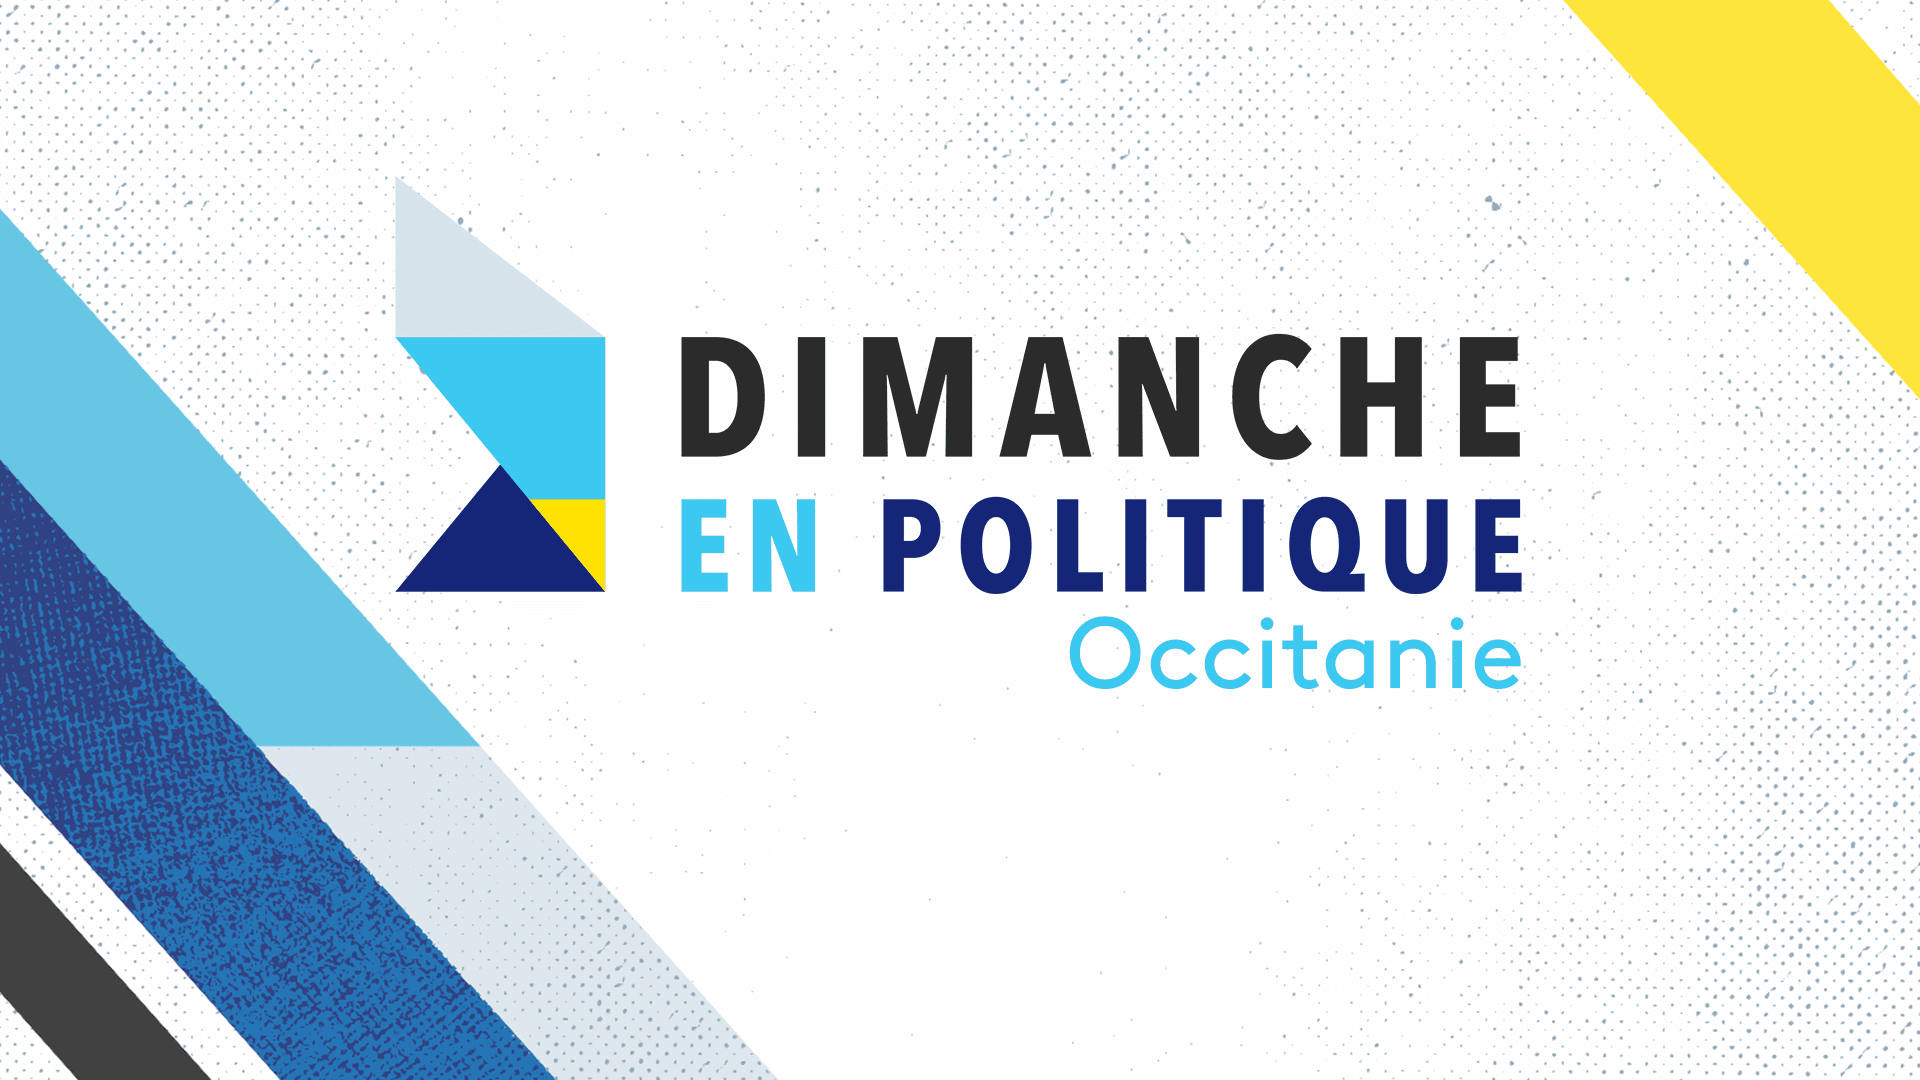 Dimanche en politique - Occitanie